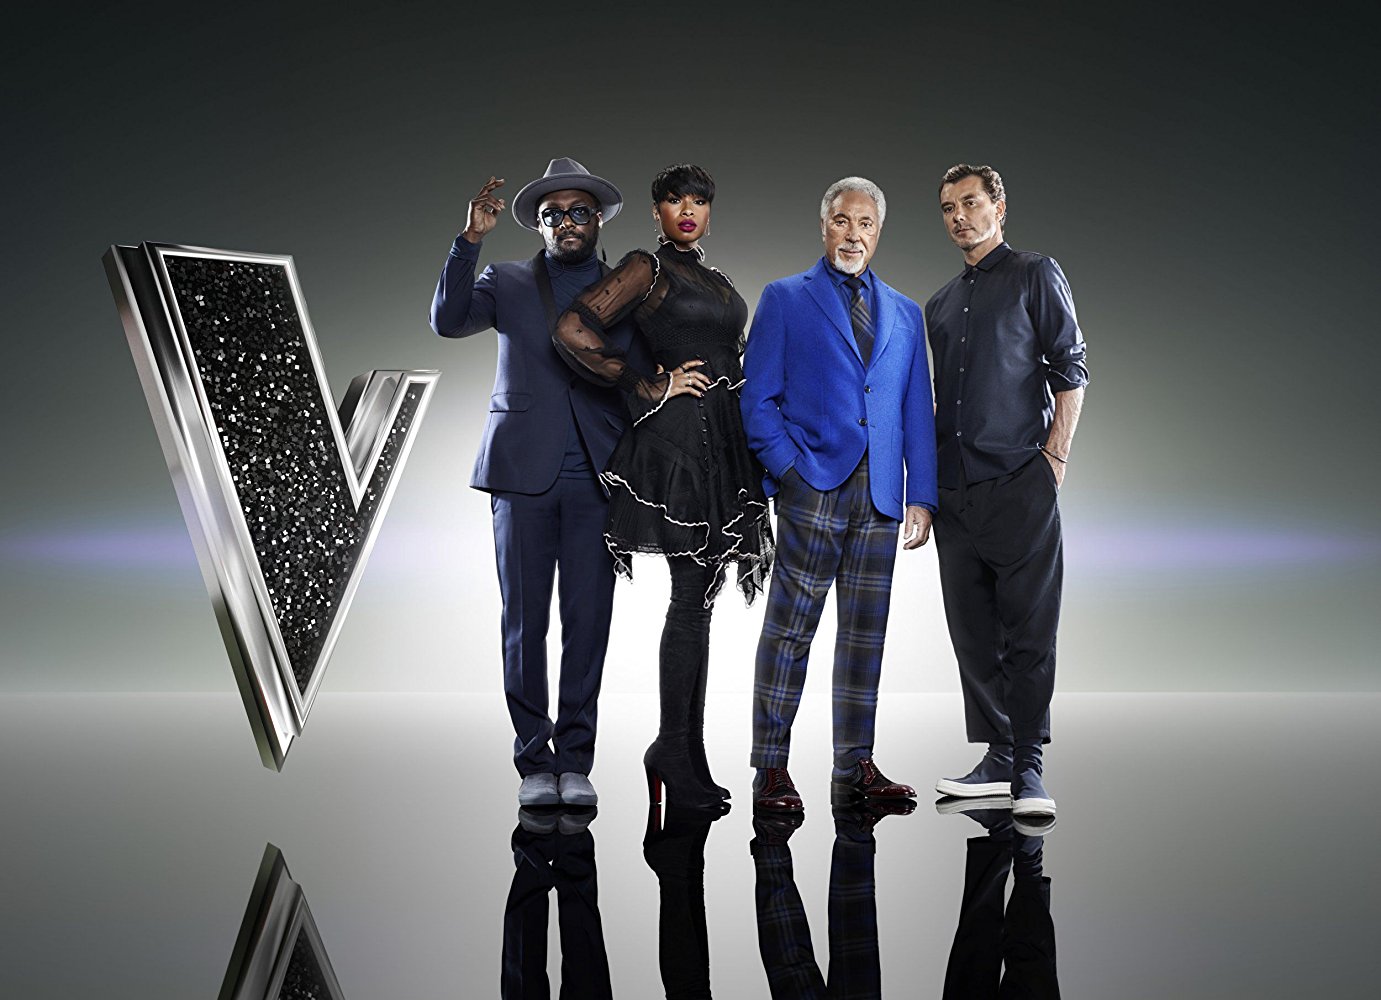 Watch The Voice UK - Season 10